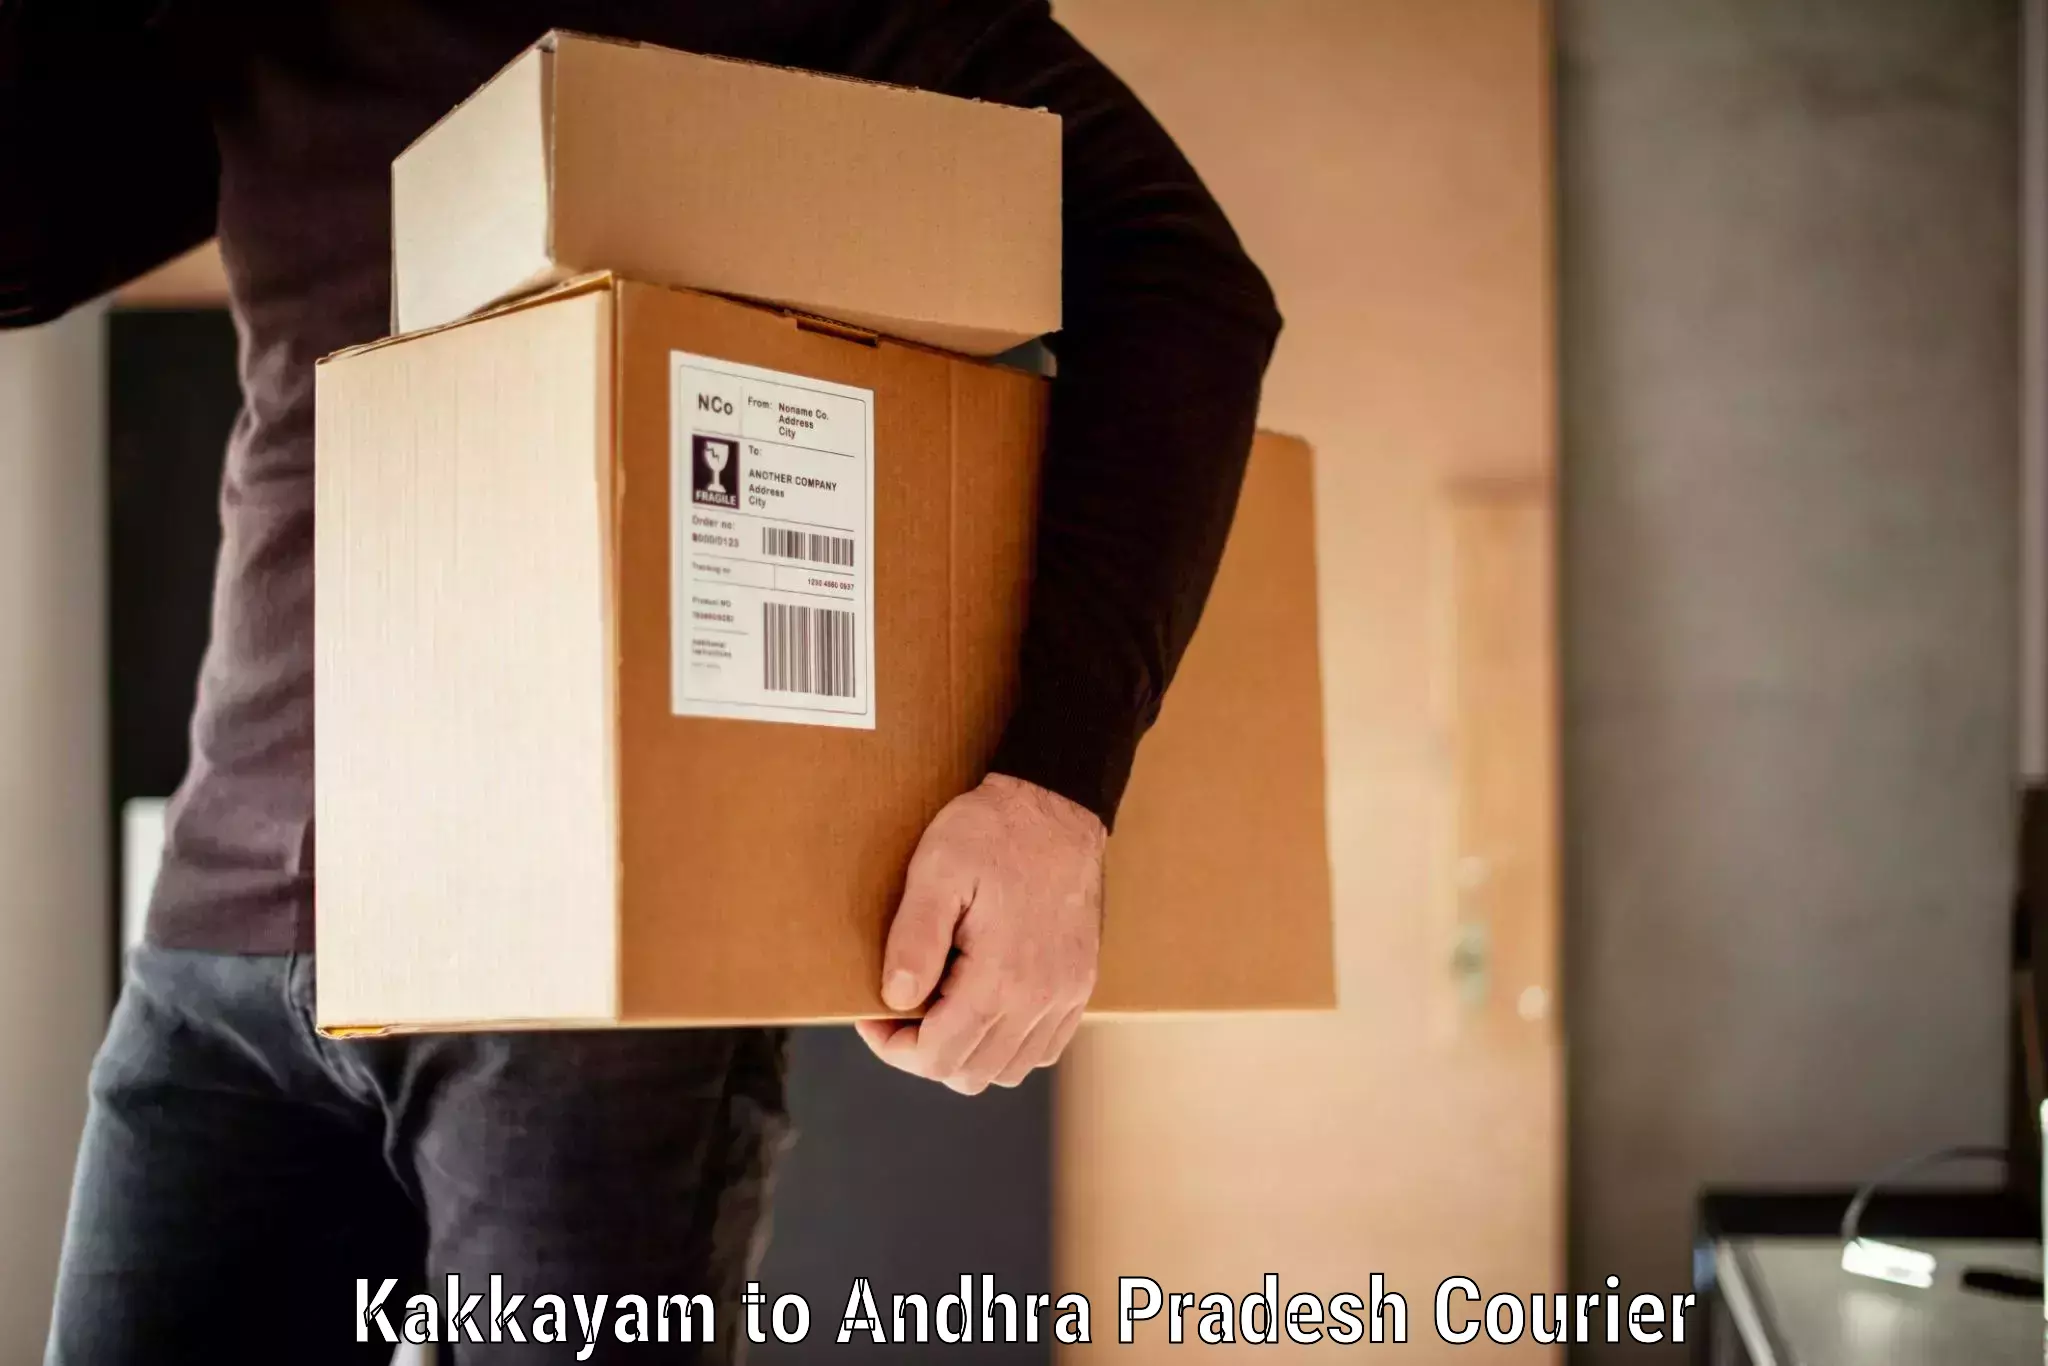 Door-to-door baggage service Kakkayam to Kavitam